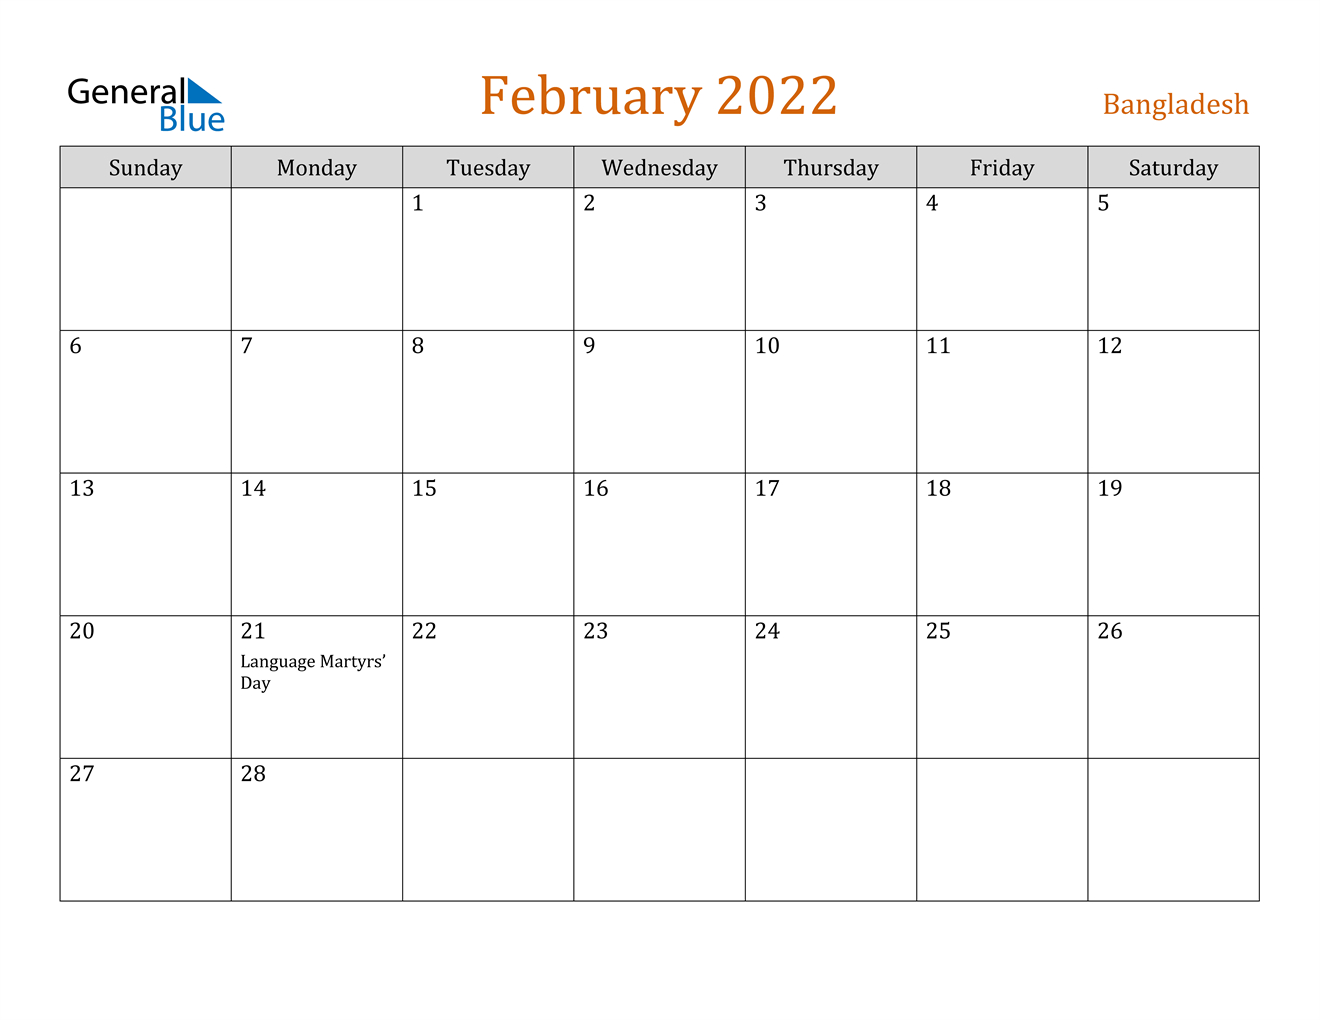 February 2022 Calendar - Bangladesh